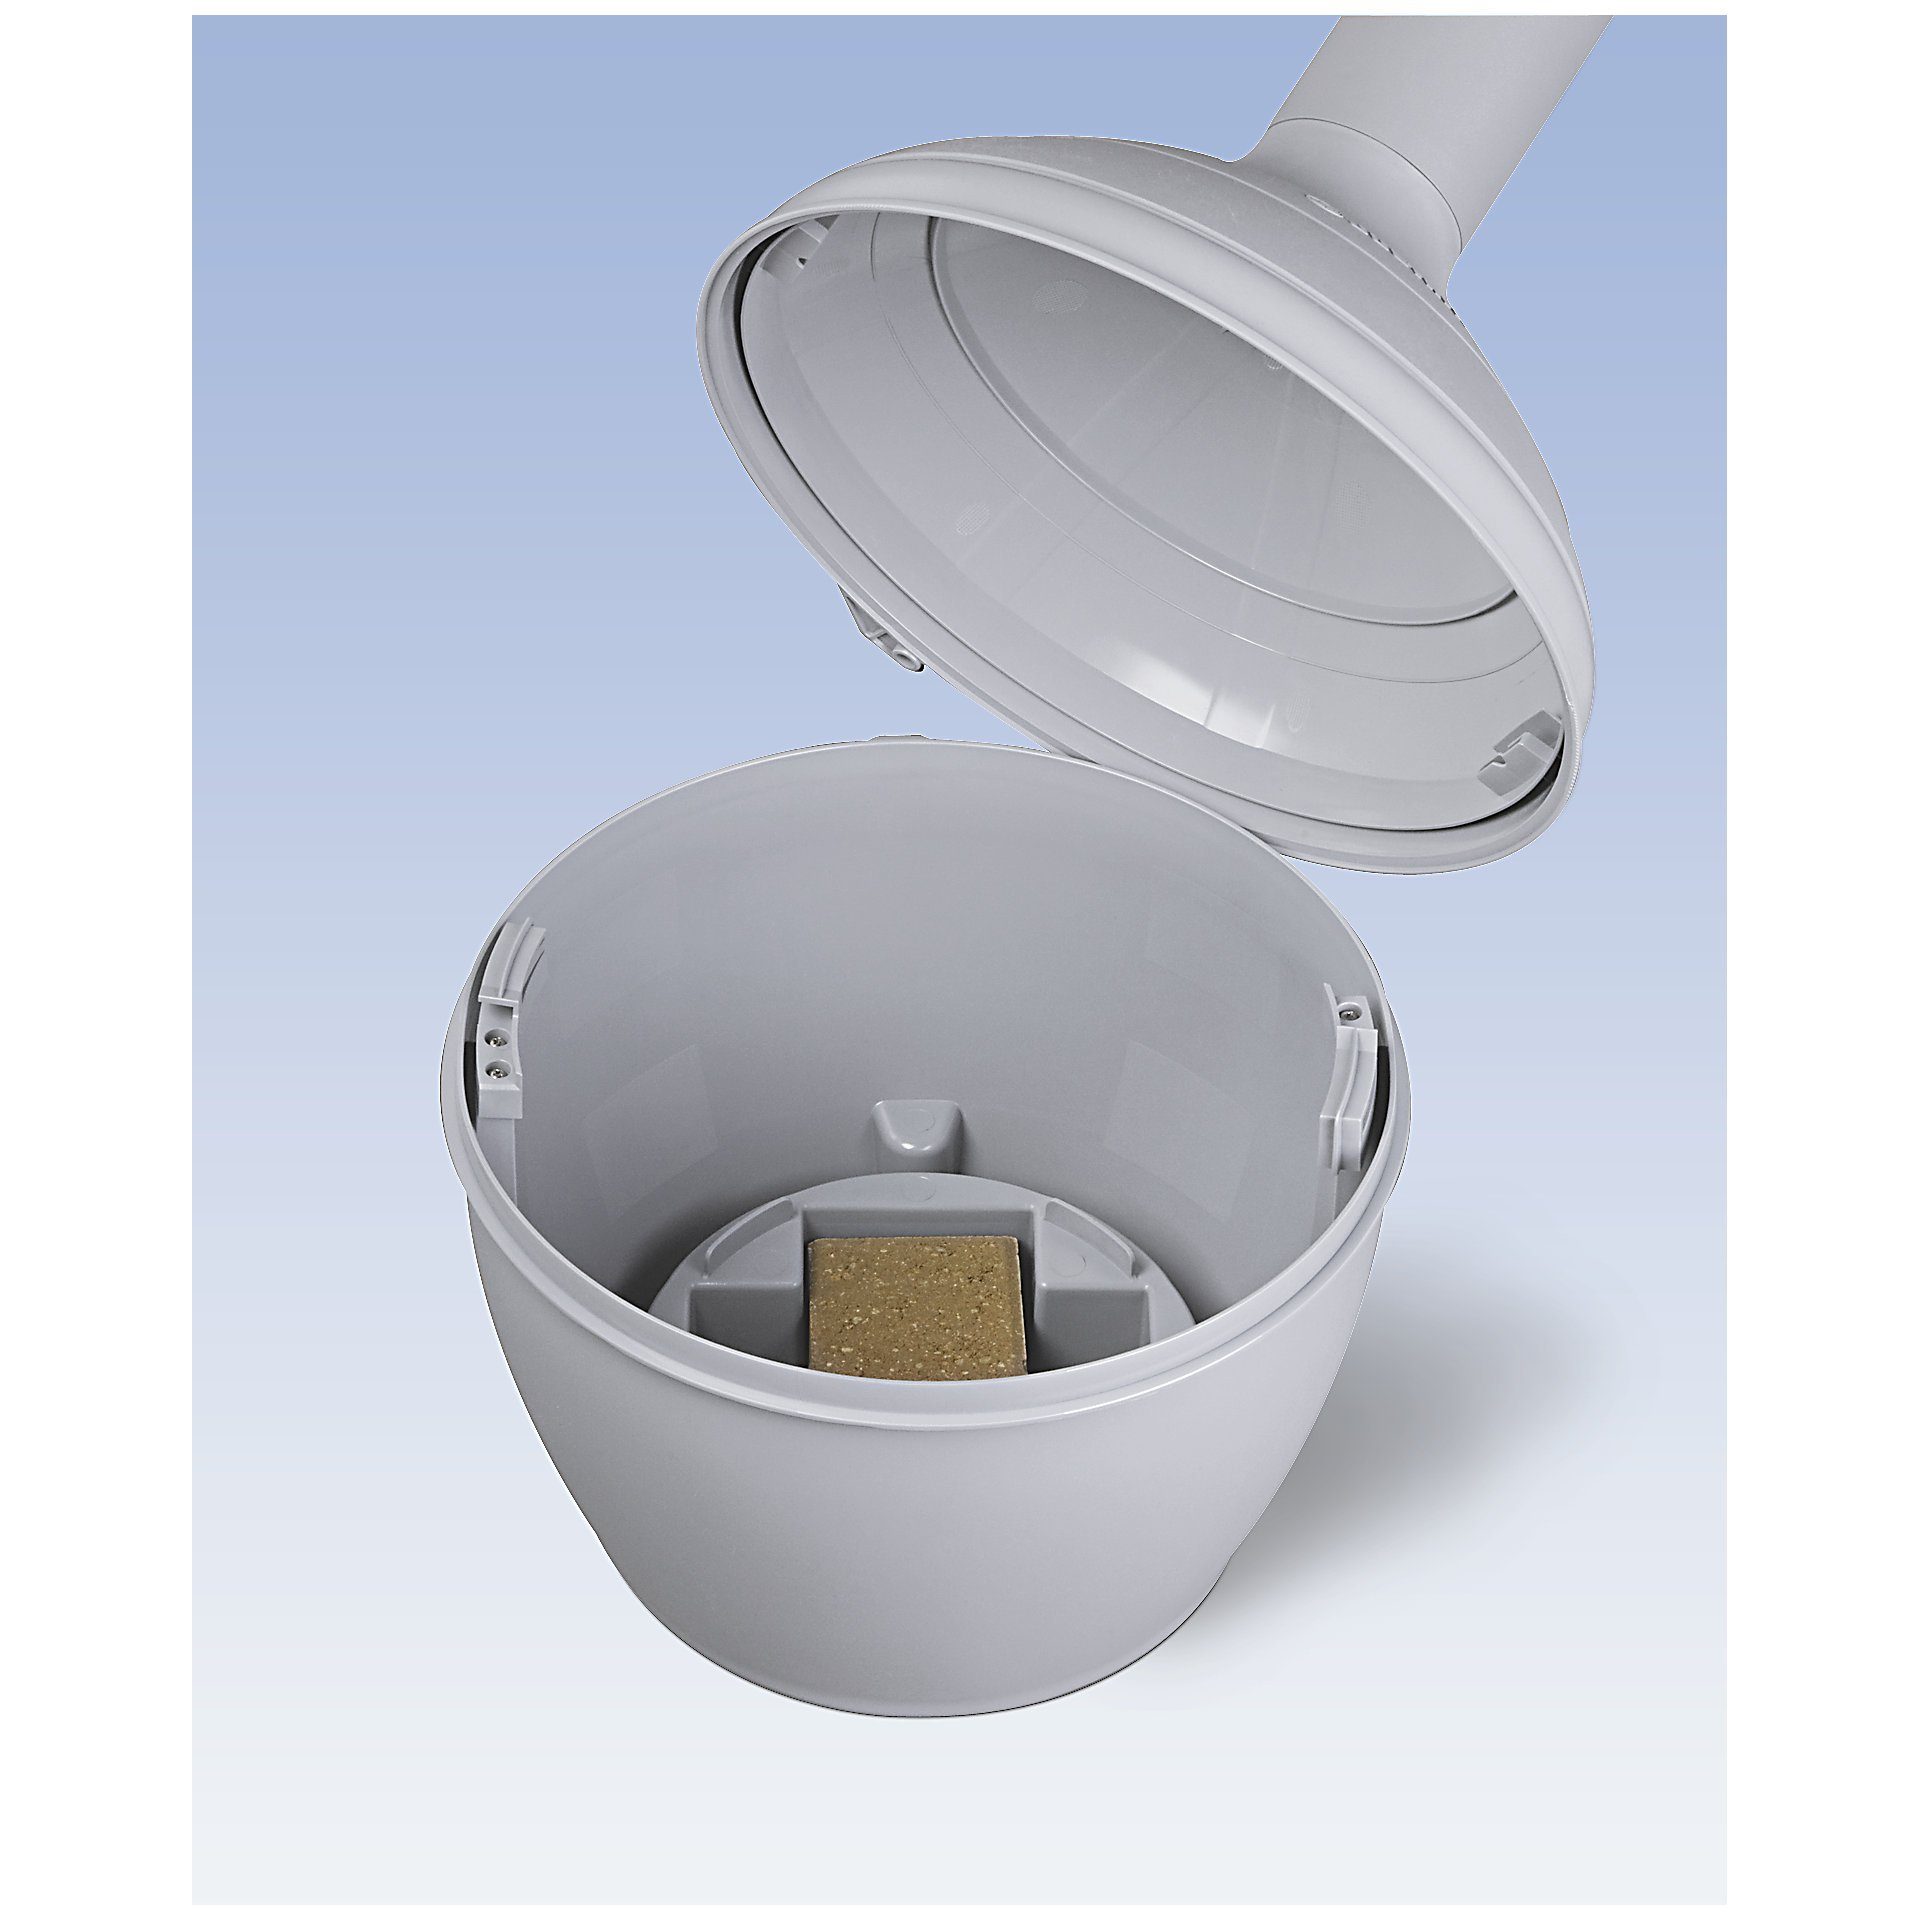 PROREGAL® Aschenbecher Sicherheits-Standascher, 15L, Beige selbstlöschend, 97x31cm HxB